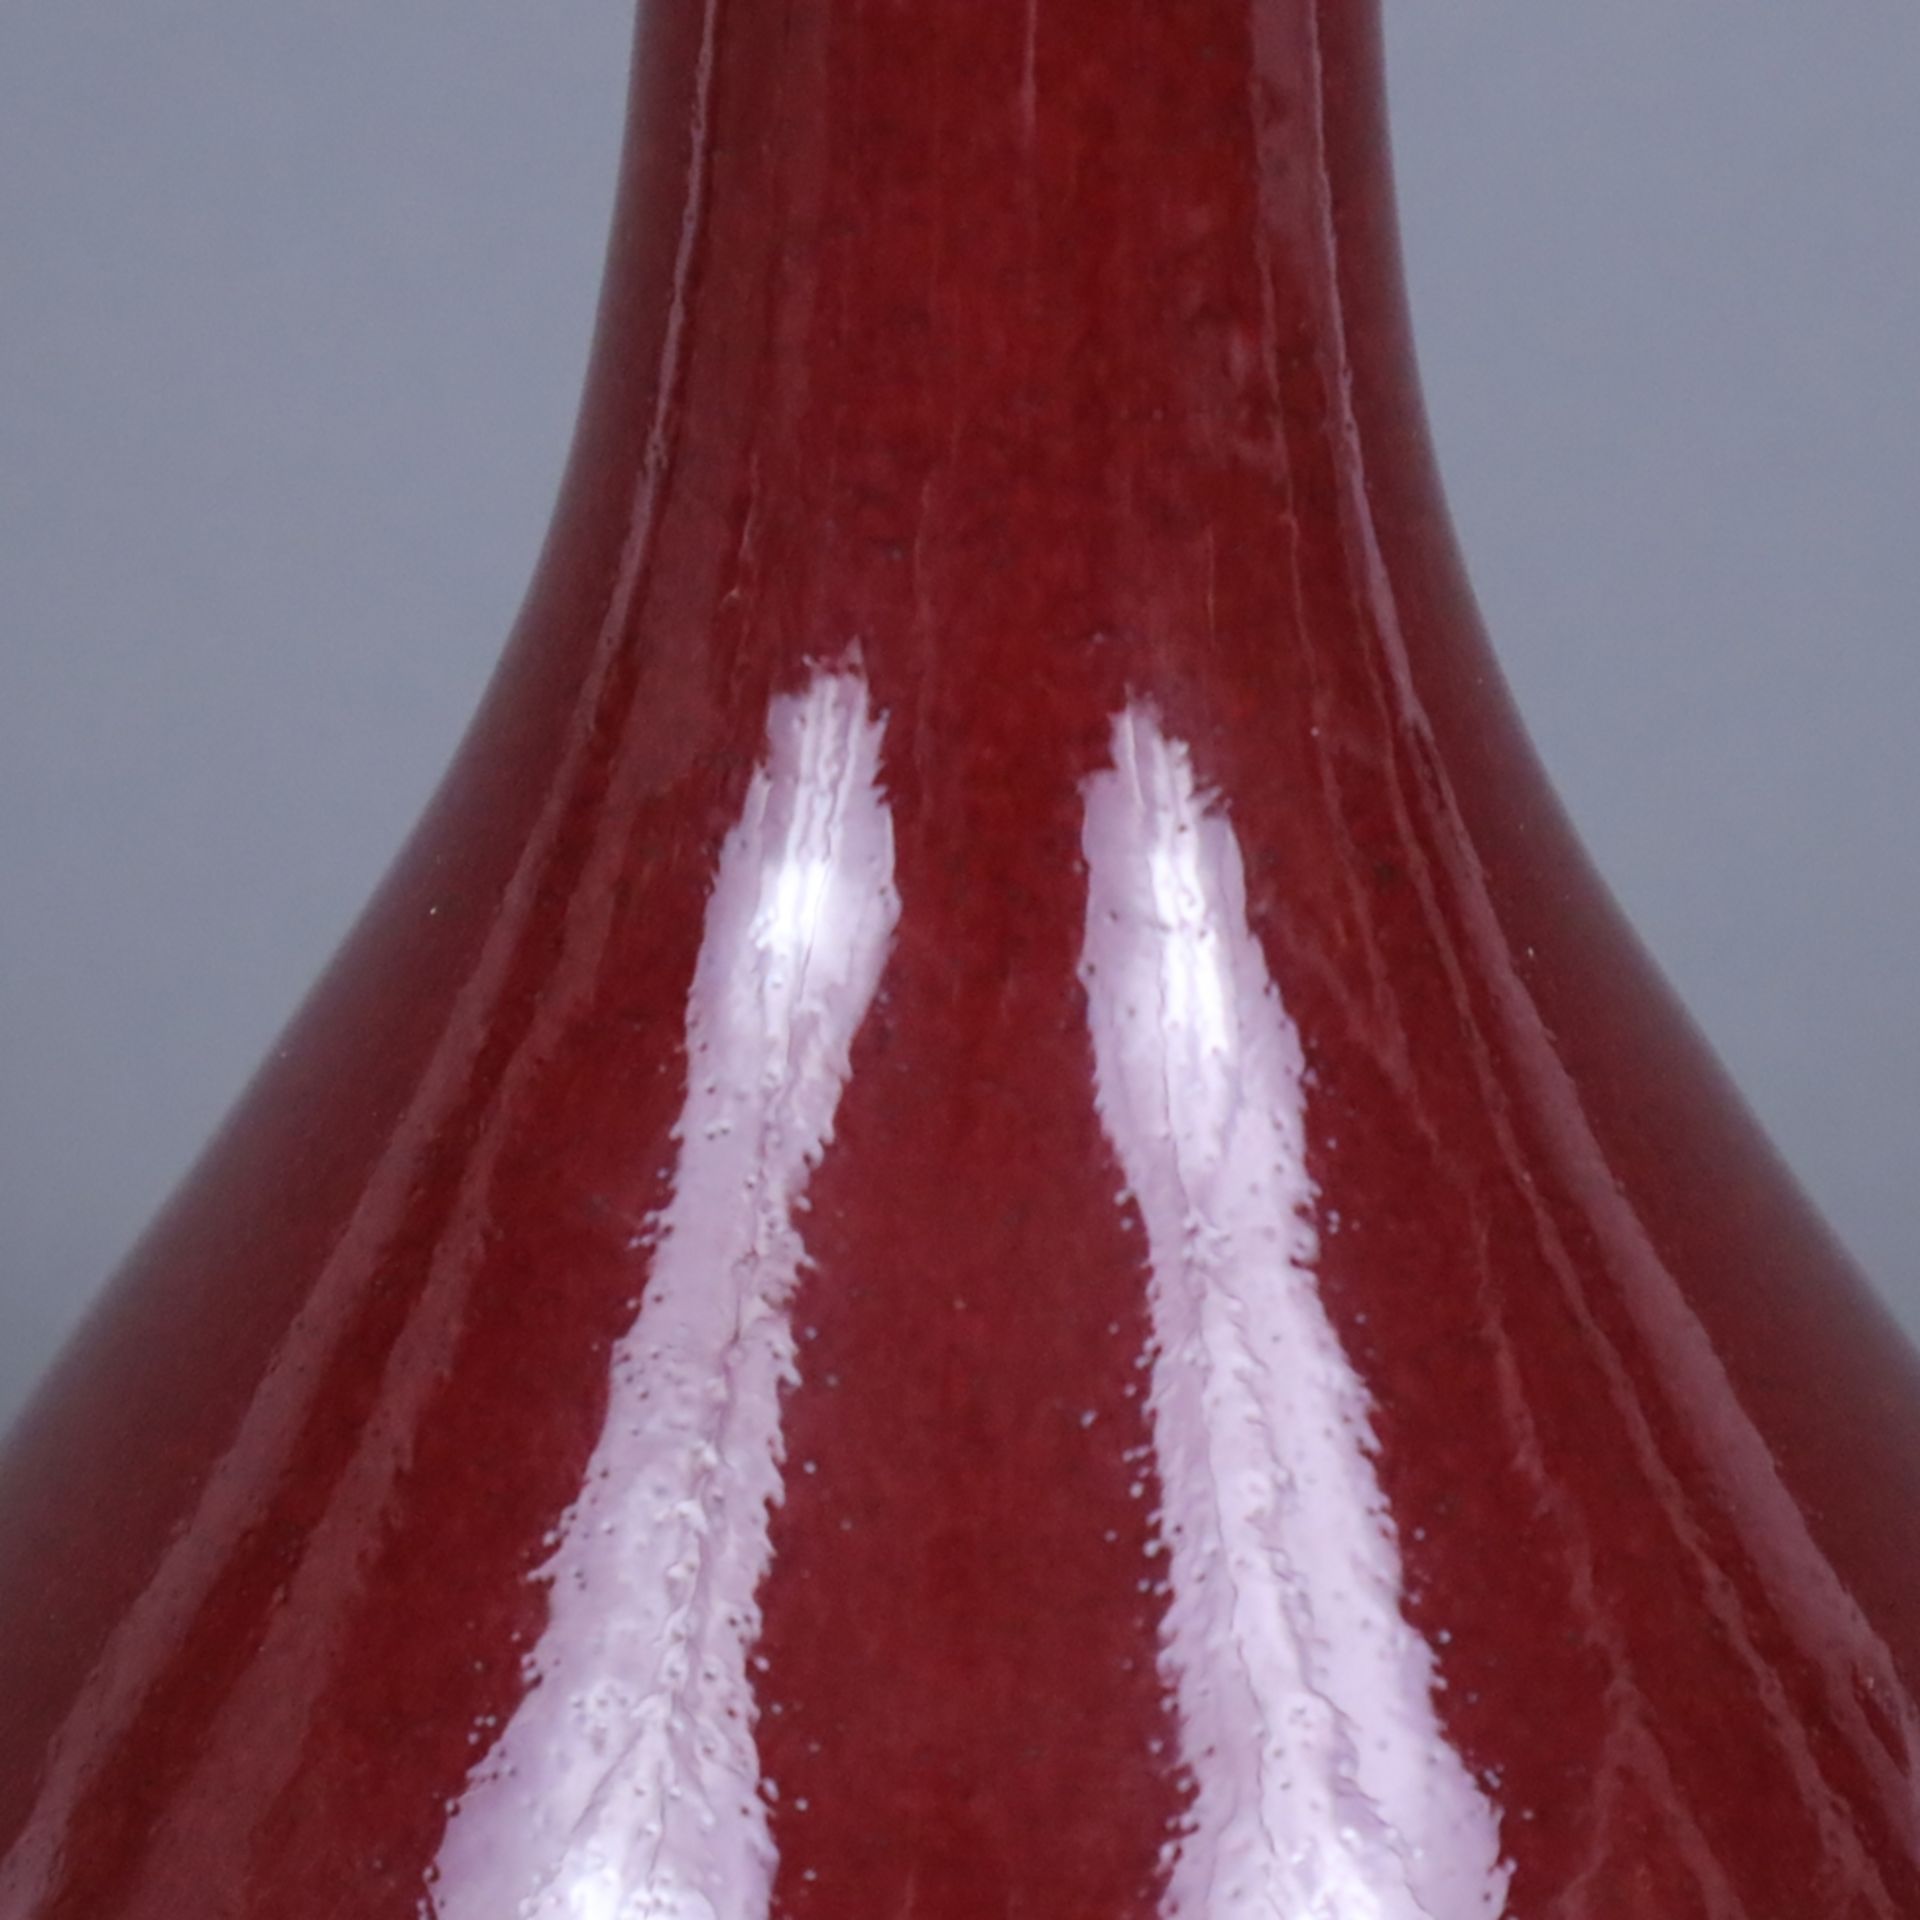 Flaschenvase - vom Typus Yuhuchunping, monochrome Ochsenblut-Überlaufglasur, im Bereich des Lippenr - Image 3 of 6